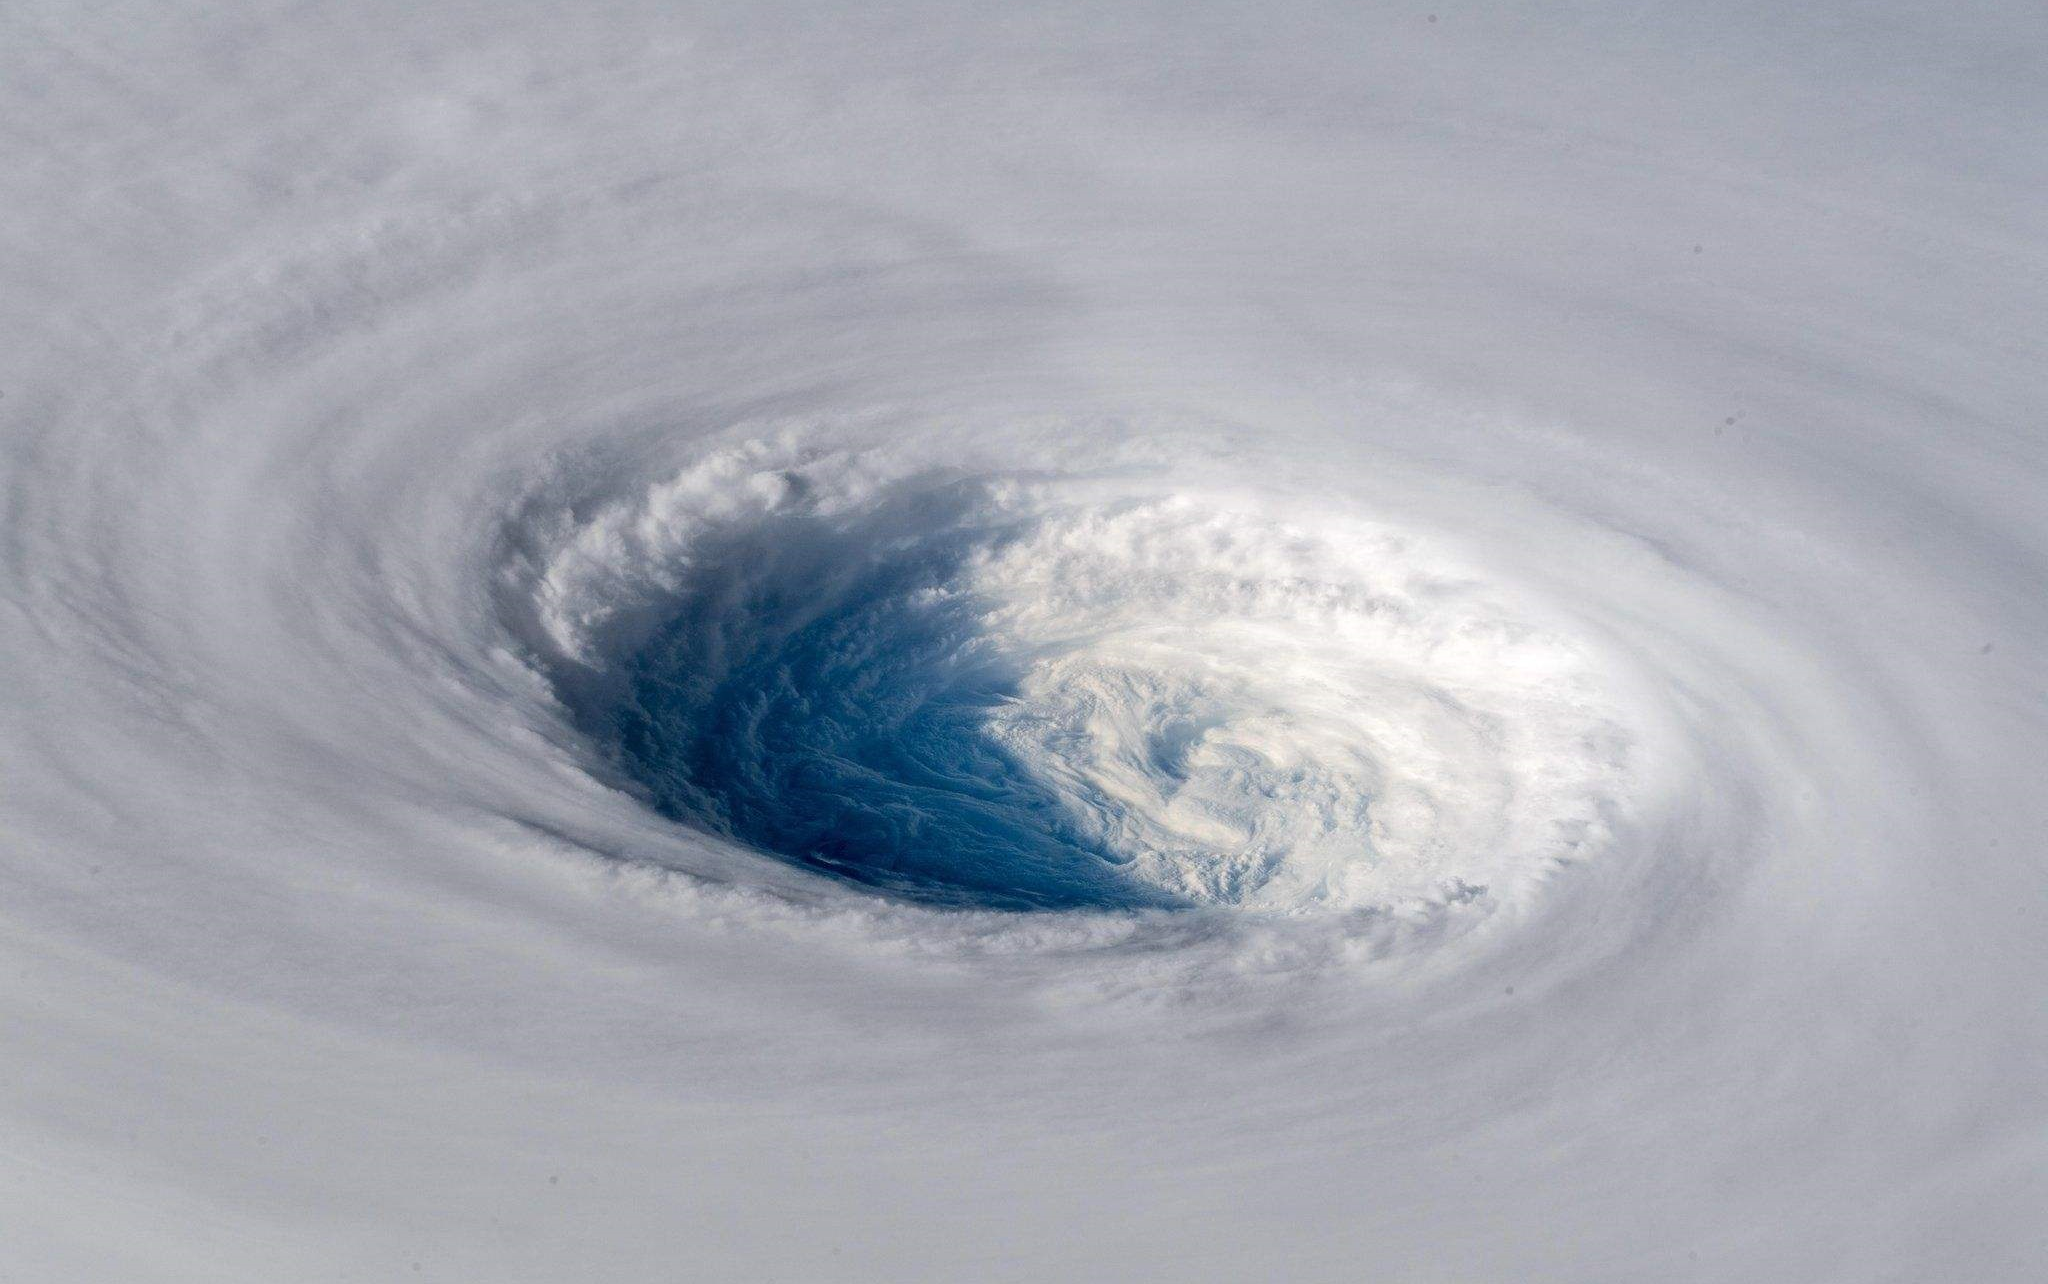 台风眼巨型图片